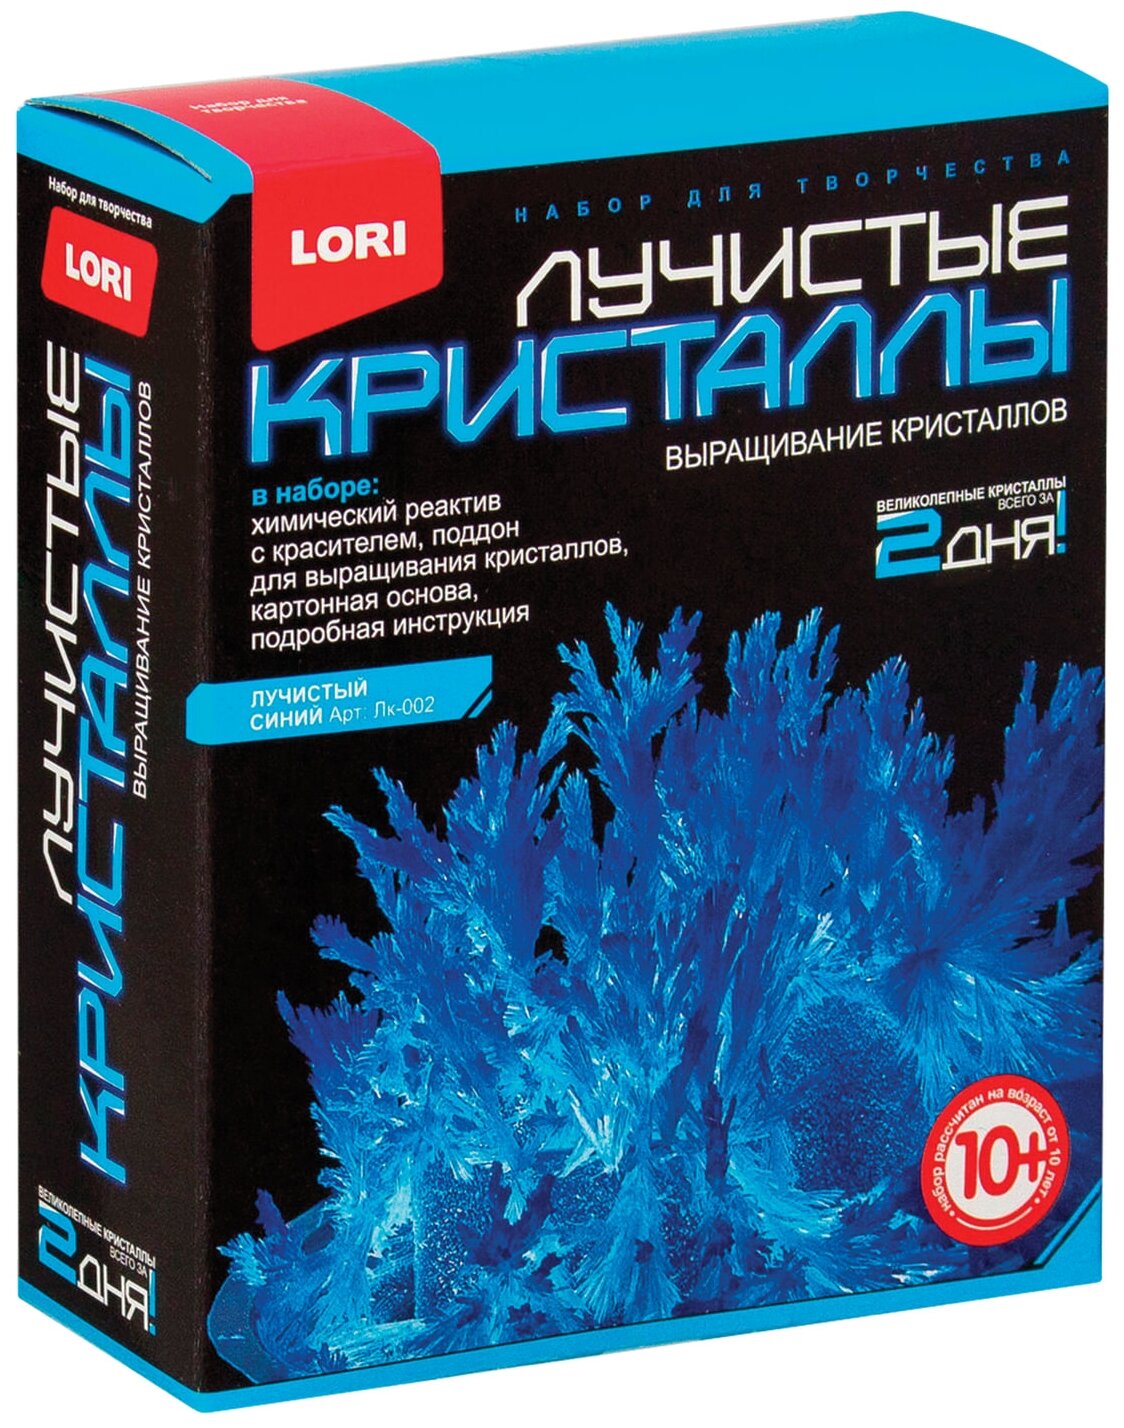 Набор для исследований LORI Лучистые кристаллы, 1 эксперимент, синий